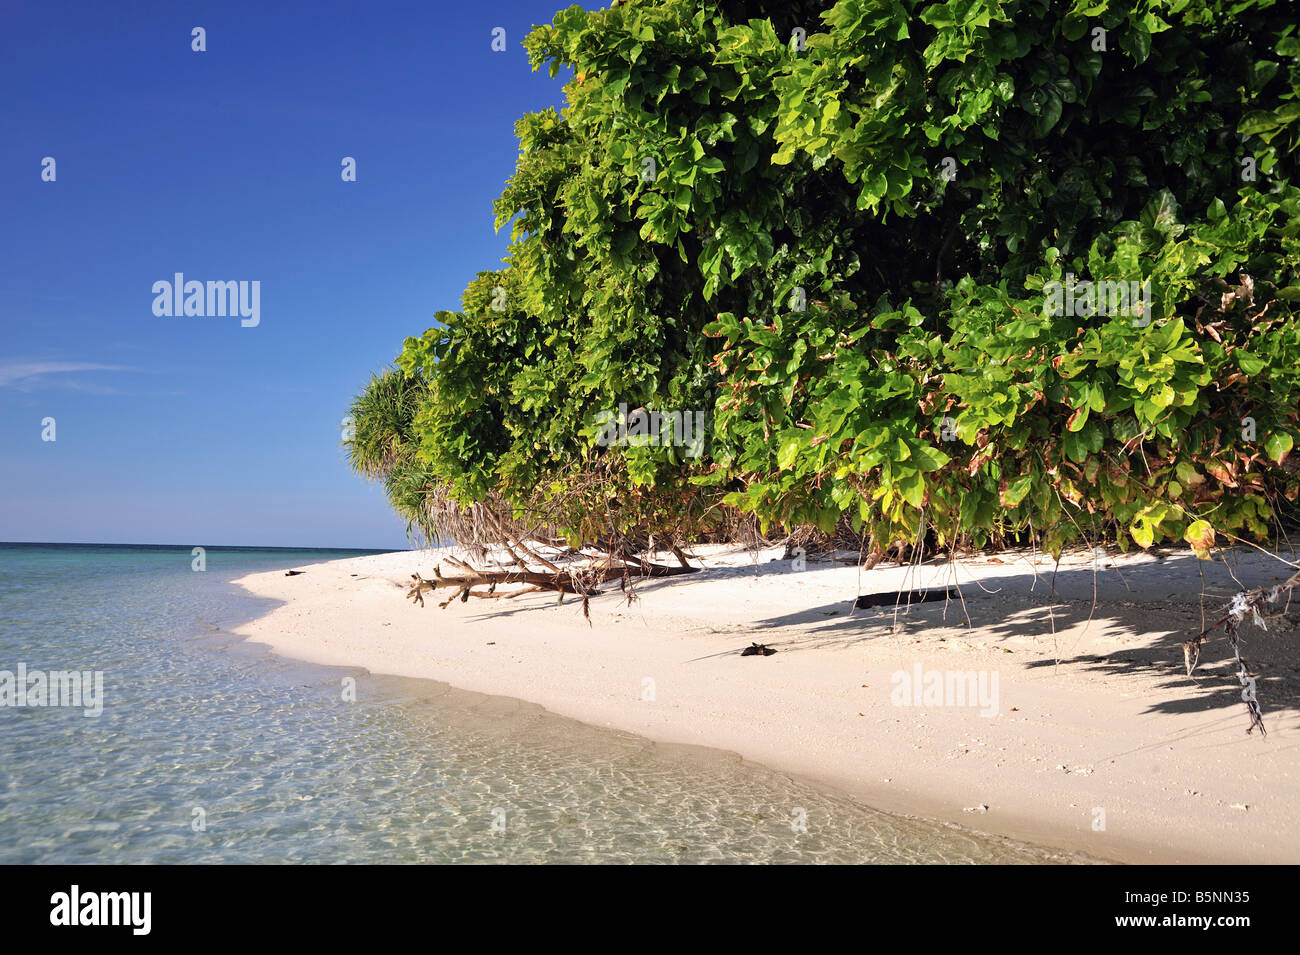 Idylic sable sur Lankayan Island avec du bois flotté, ciel bleu et clair de l'eau de mer Banque D'Images